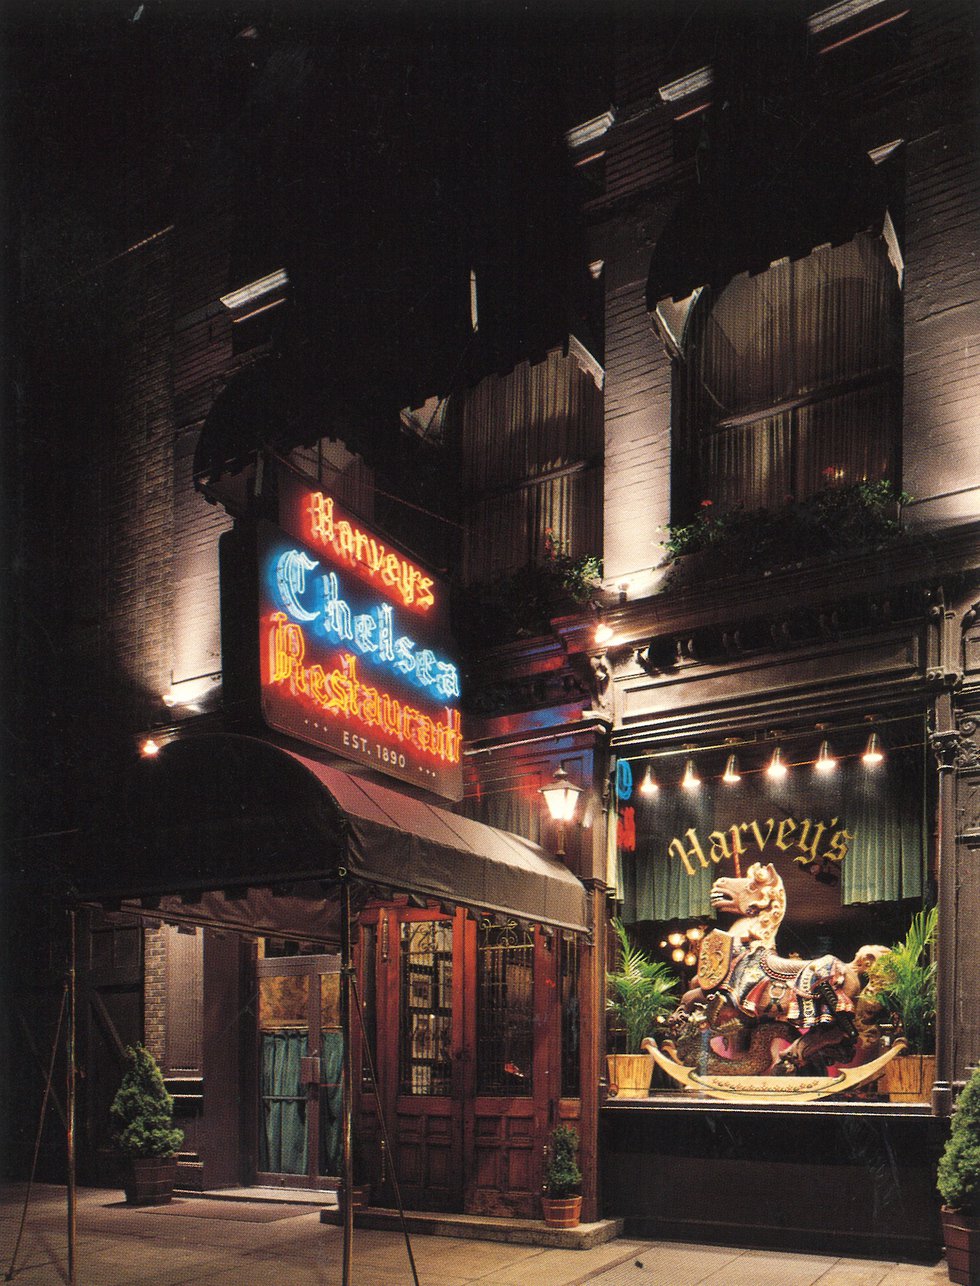 5. Harveys Chelsea Restaurant 1989 02 03.jpg